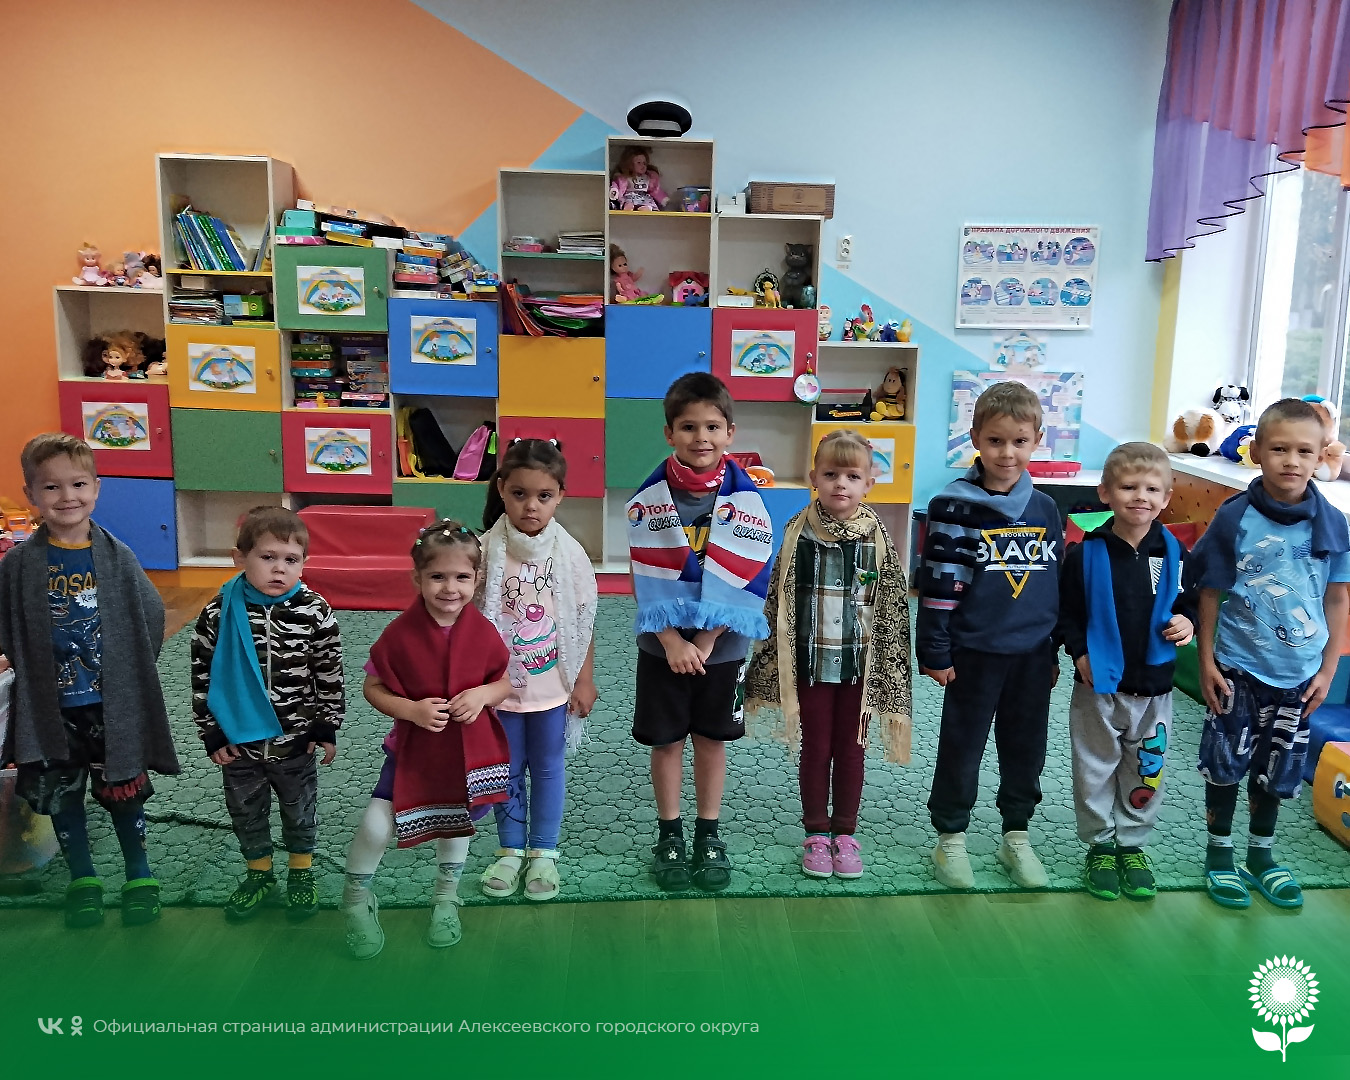 В детских садах Алексеевского городского округа прошел интересный и необычный День пестрых шарфов.